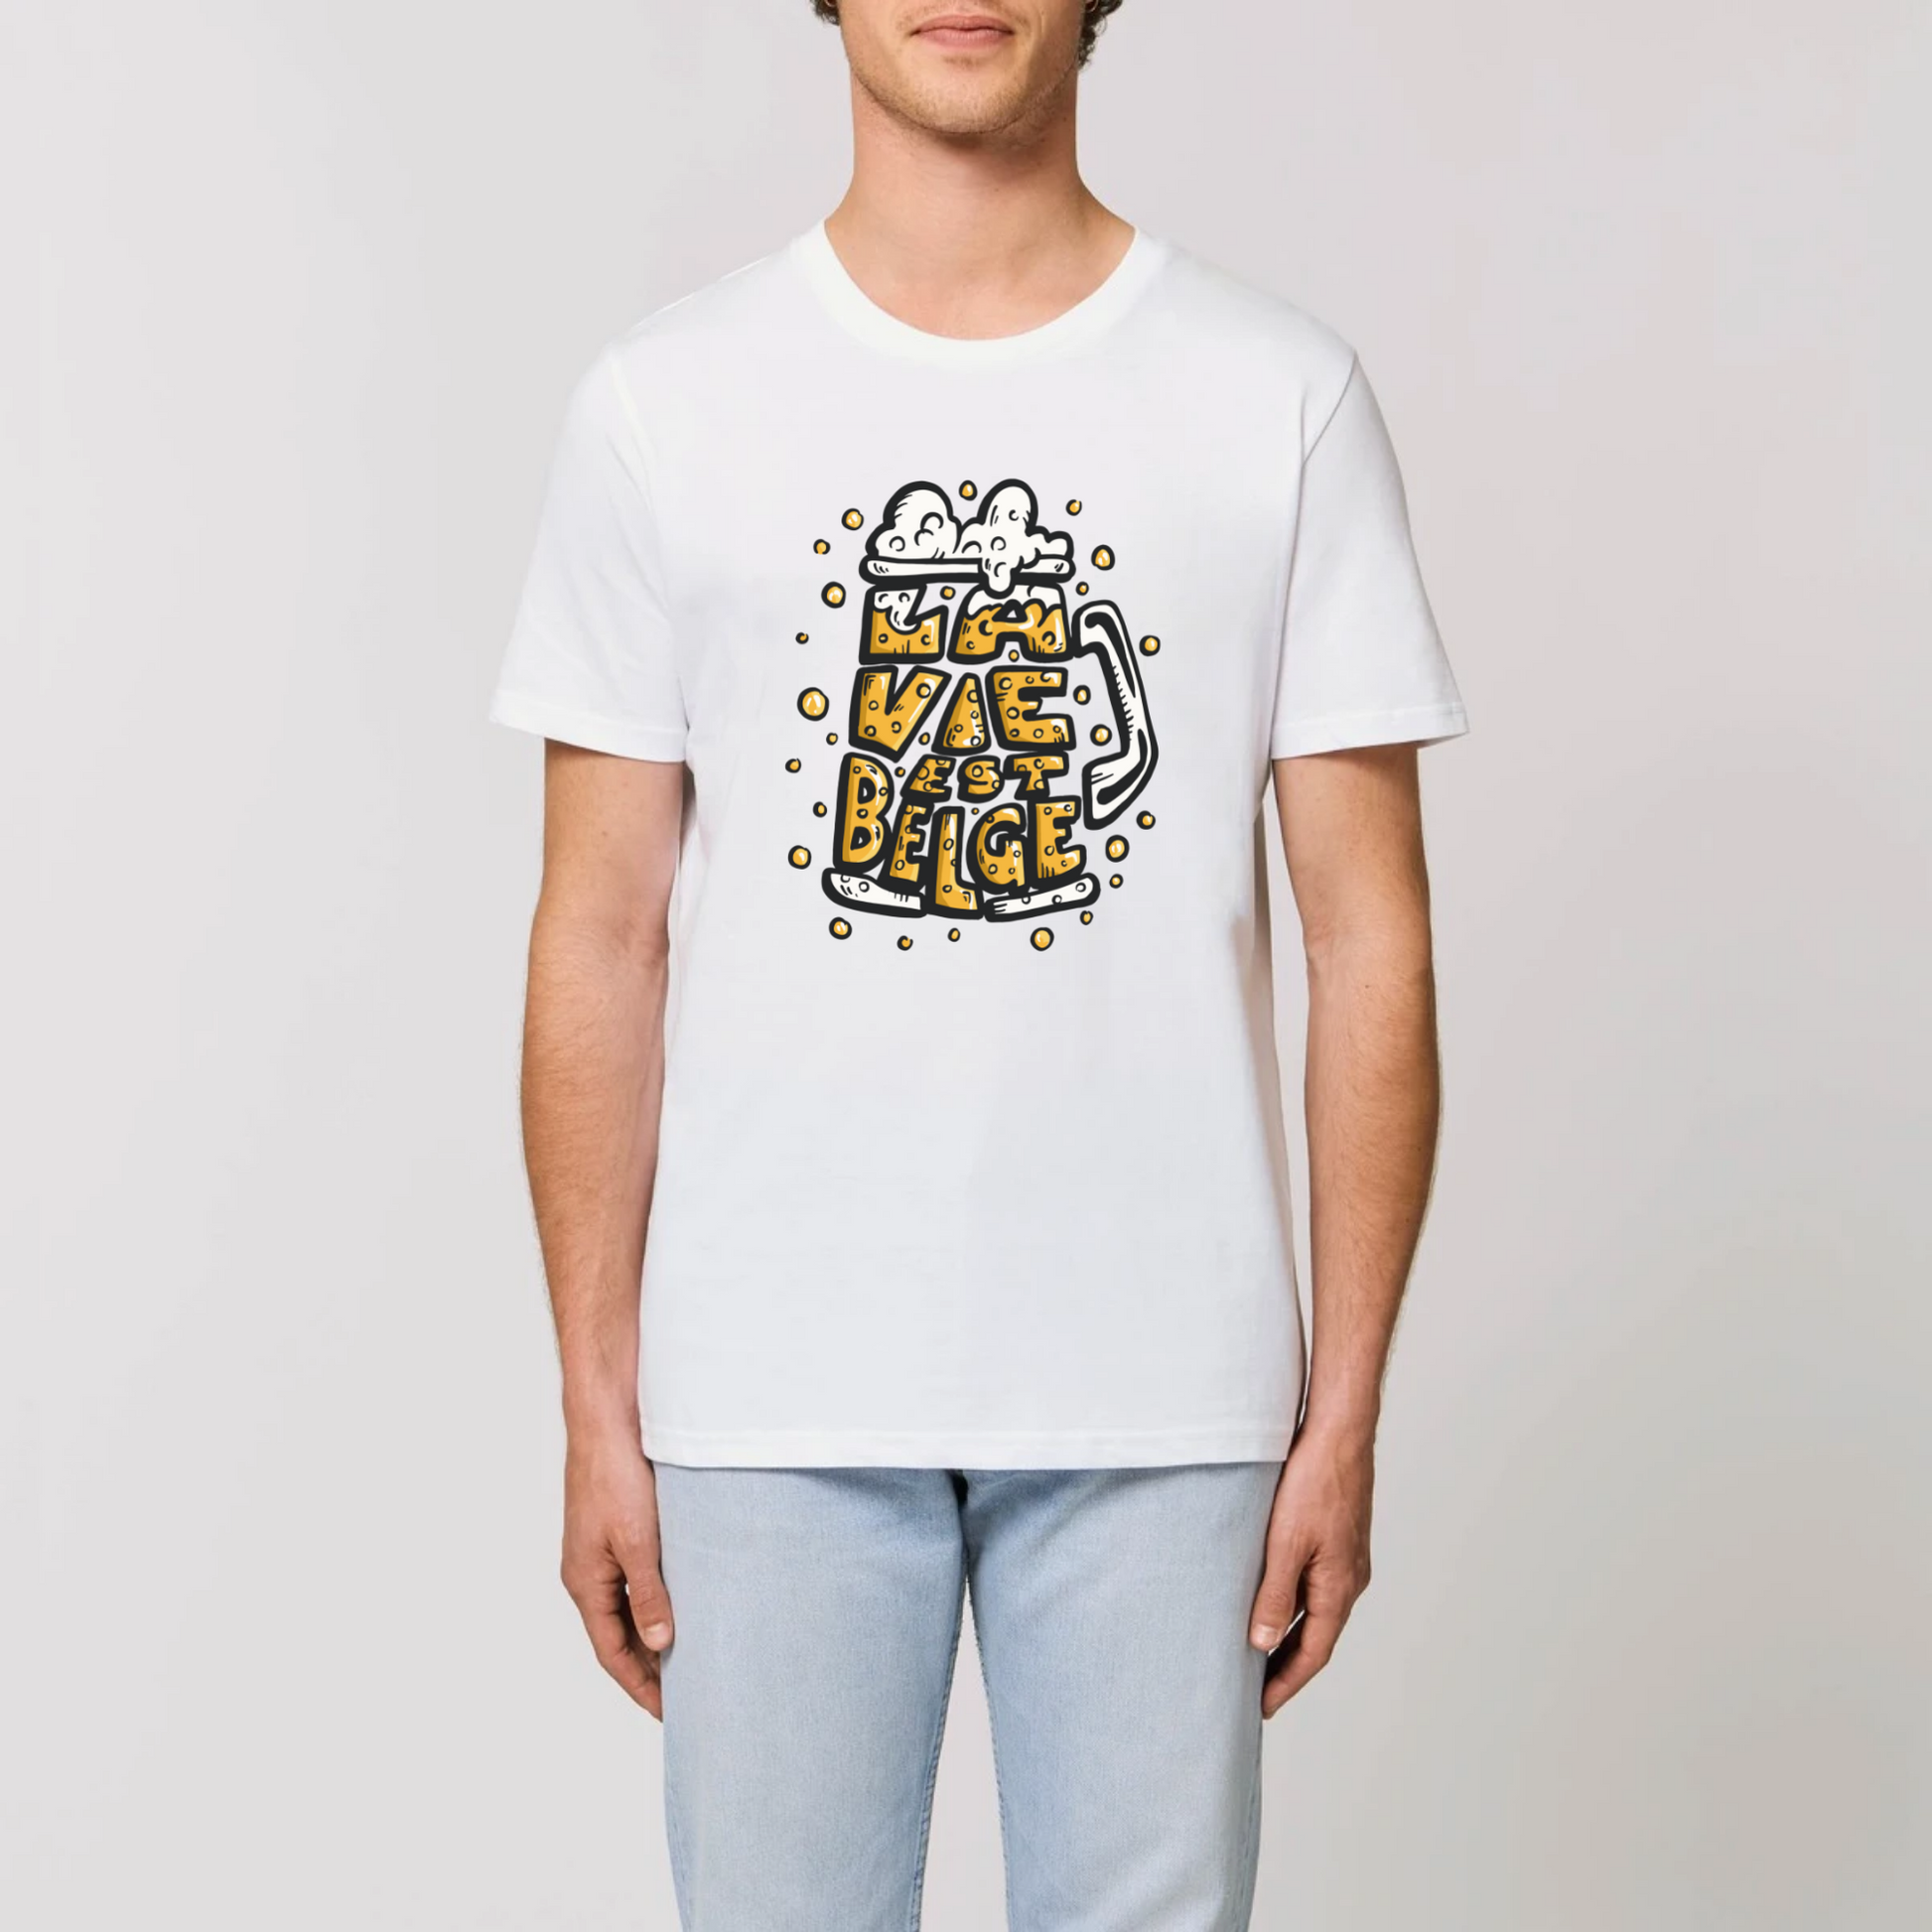 T-Shirt BIO Homme 180g - L'Atelier Textile